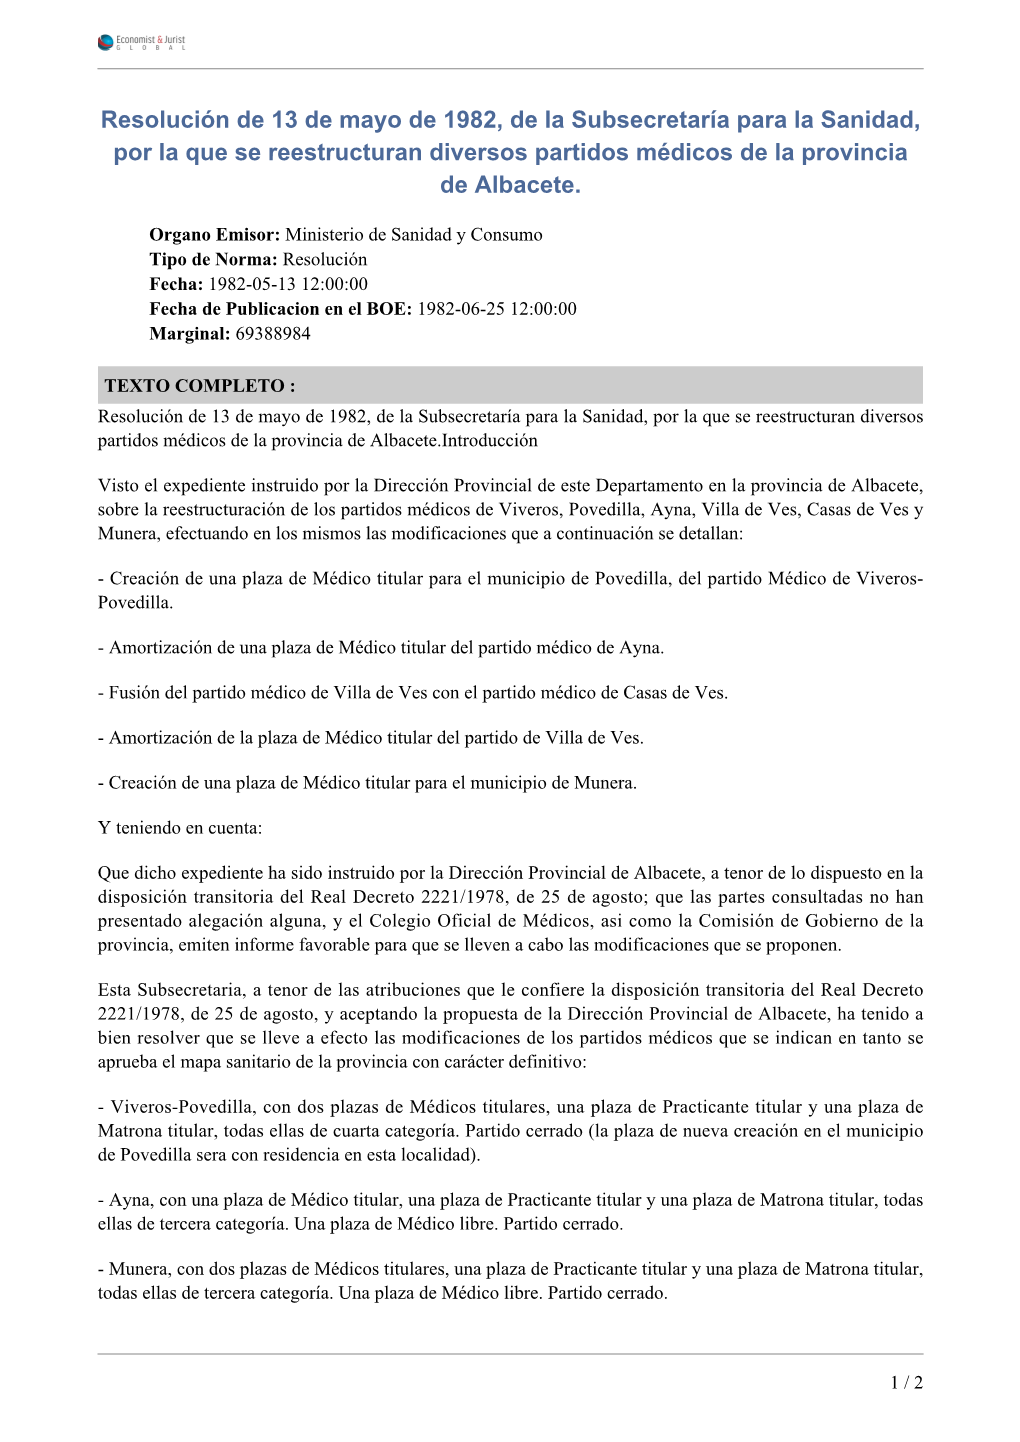 Resolución De 13 De Mayo De 1982, De La Subsecretaría Para La Sanidad, Por La Que Se Reestructuran Diversos Partidos Médicos De La Provincia De Albacete